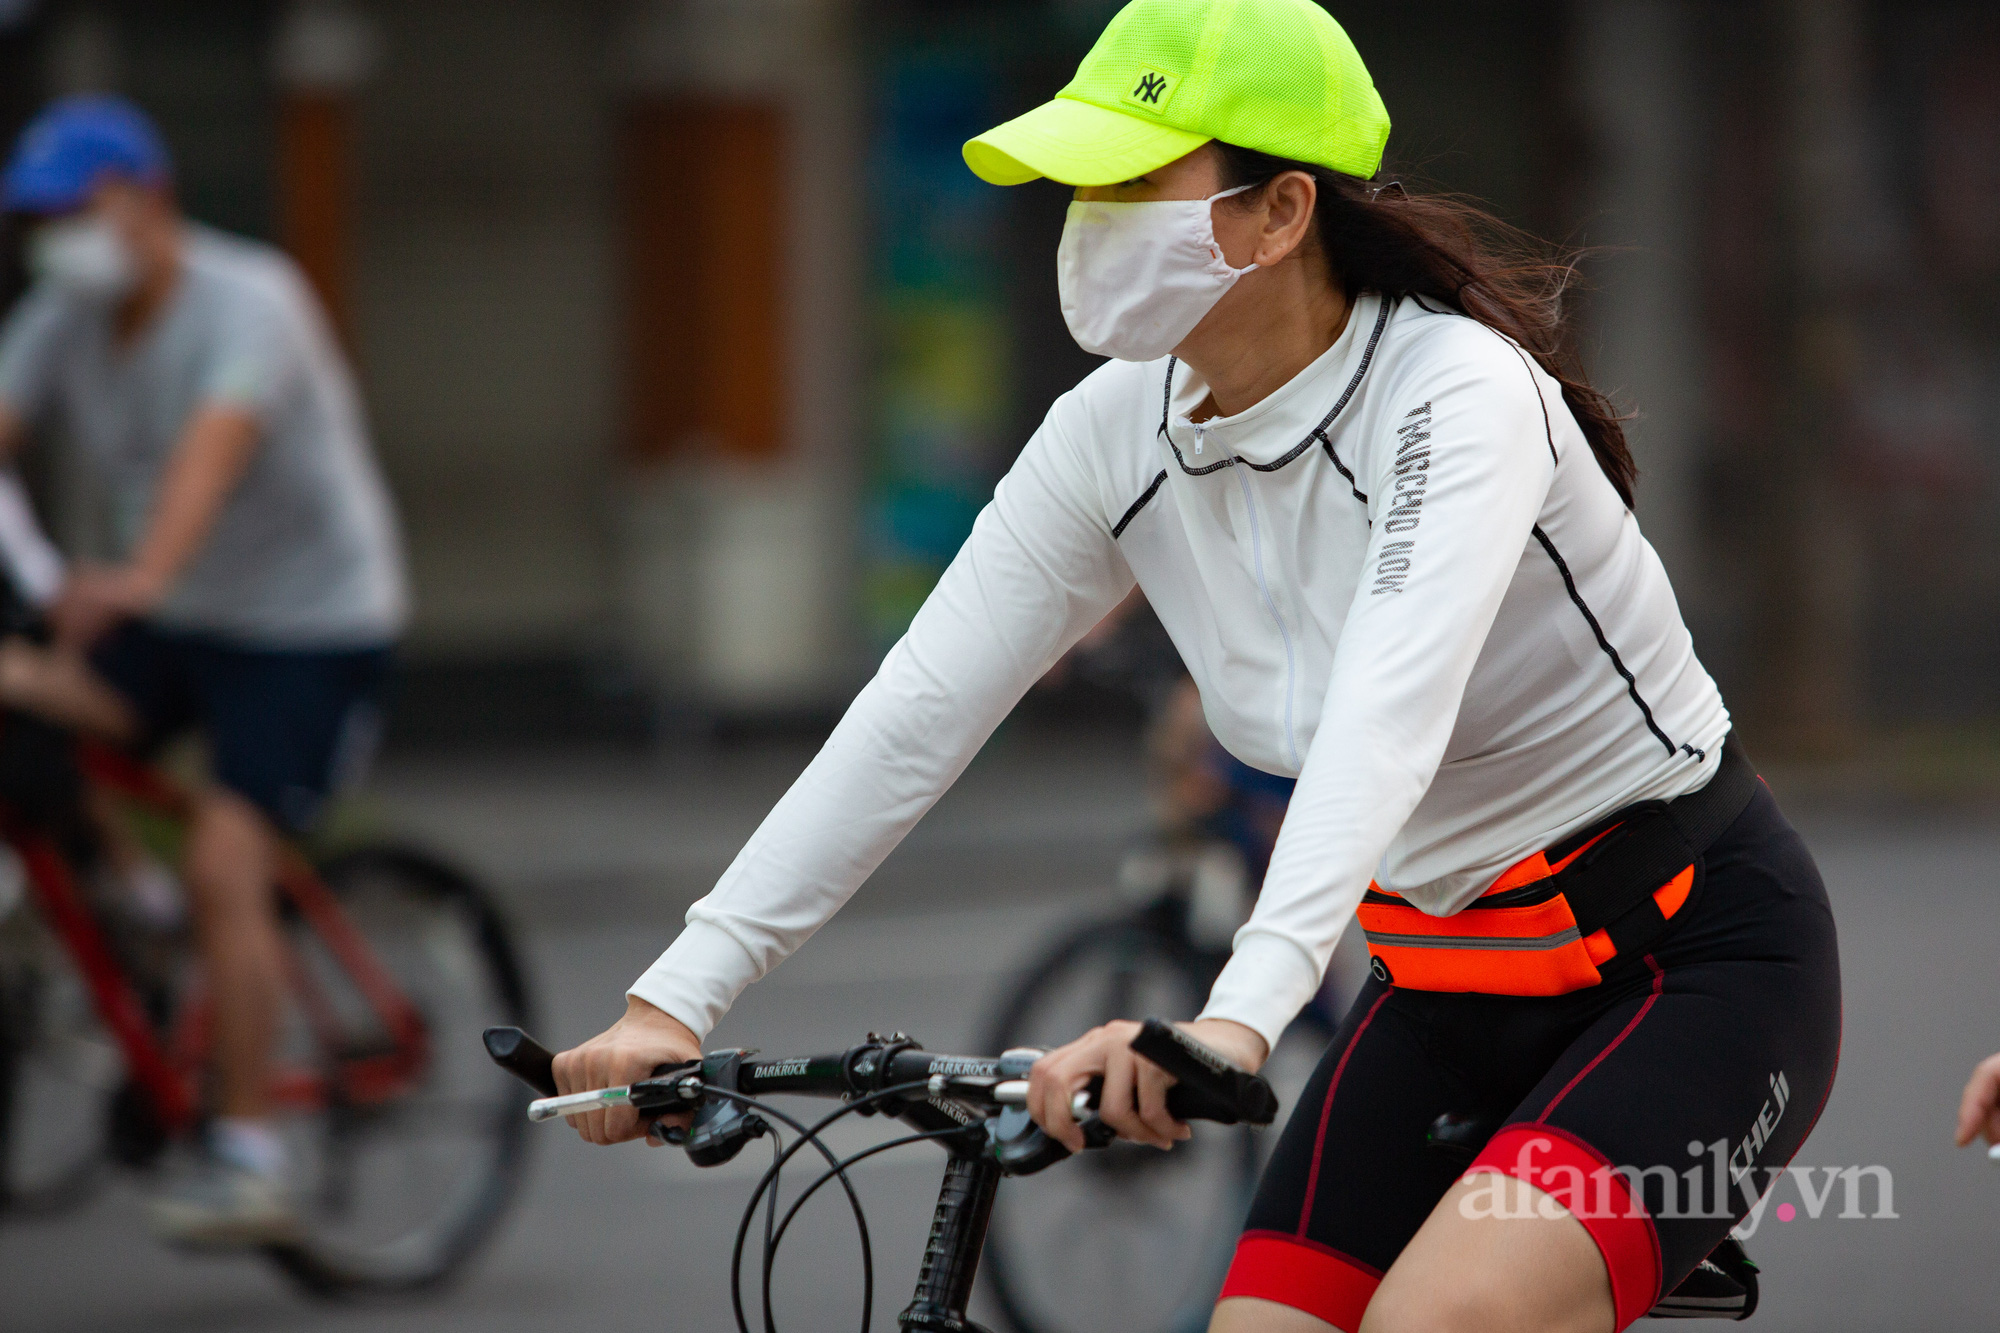 Cảnh lâu lắm rồi mới thấy ở Hà Nội: Người người xuống đường tập thể dục, phố đi bộ thành 'trường đua' xe đạp từ sáng sớm - 13